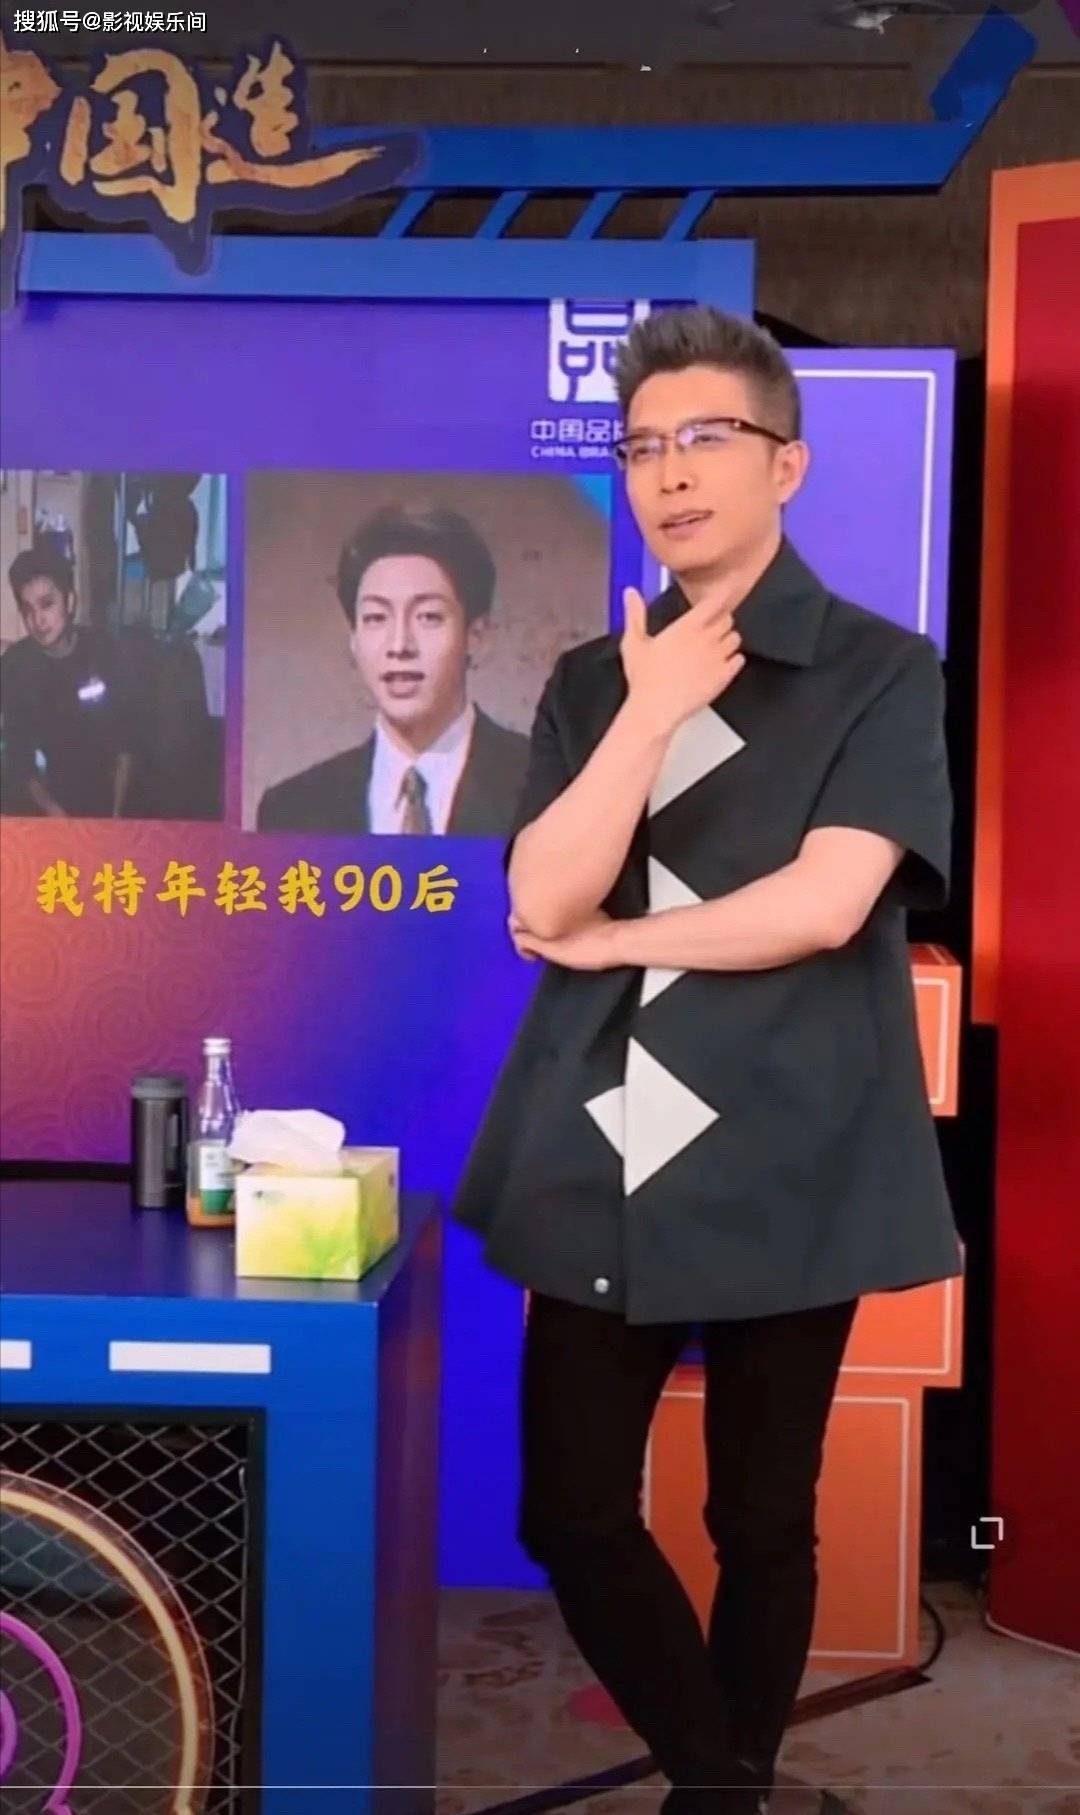 段子手朱广权被邀请到薇娅直播室,强大的个人性格魅力把全场变成搞笑